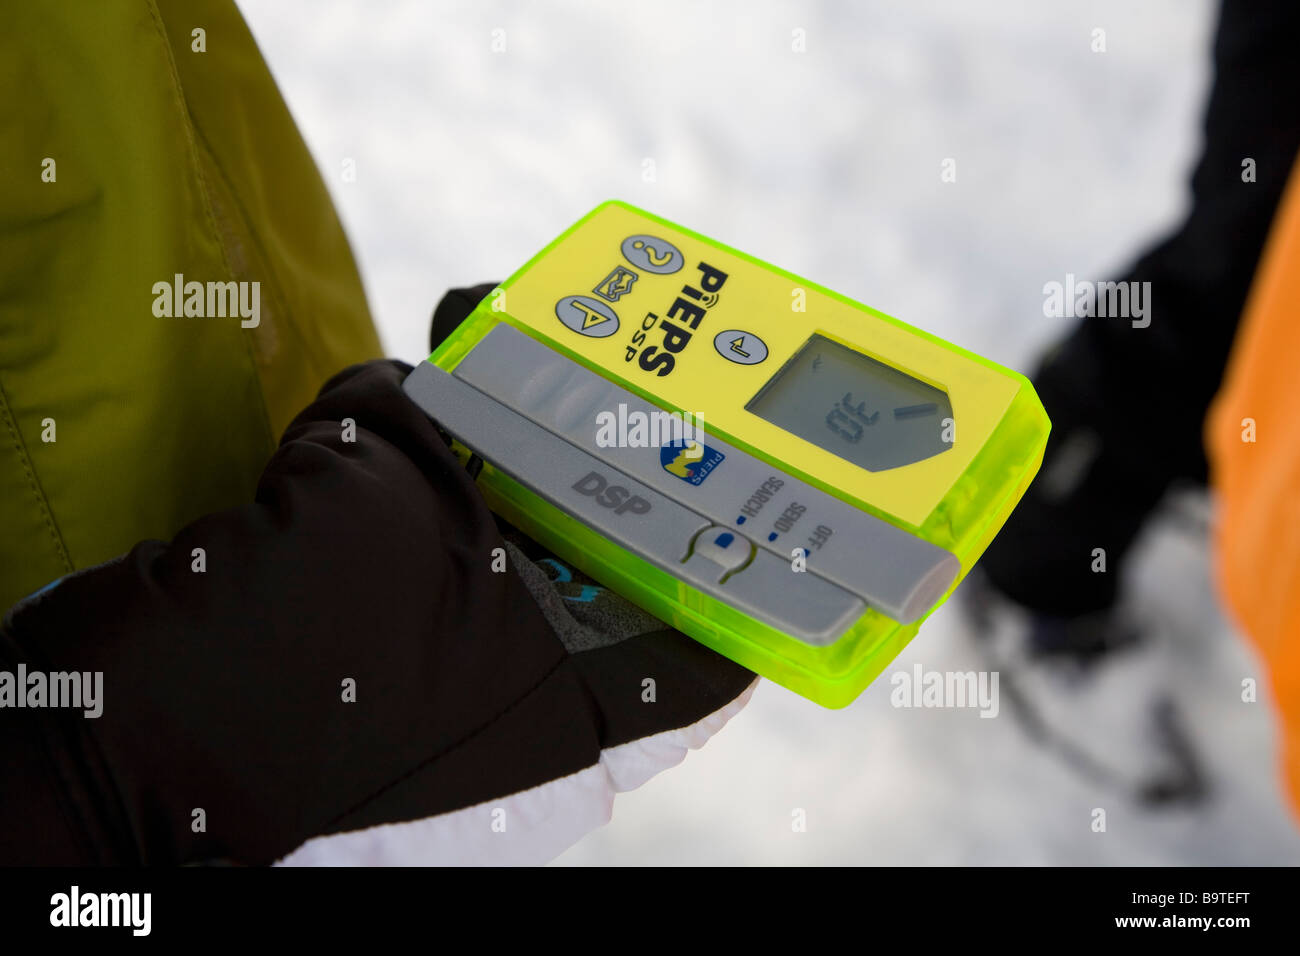 Un appareil Pieps dps l'utilisation principale est pour localiser un signal d'un skieur pris dans une avalanche Banque D'Images